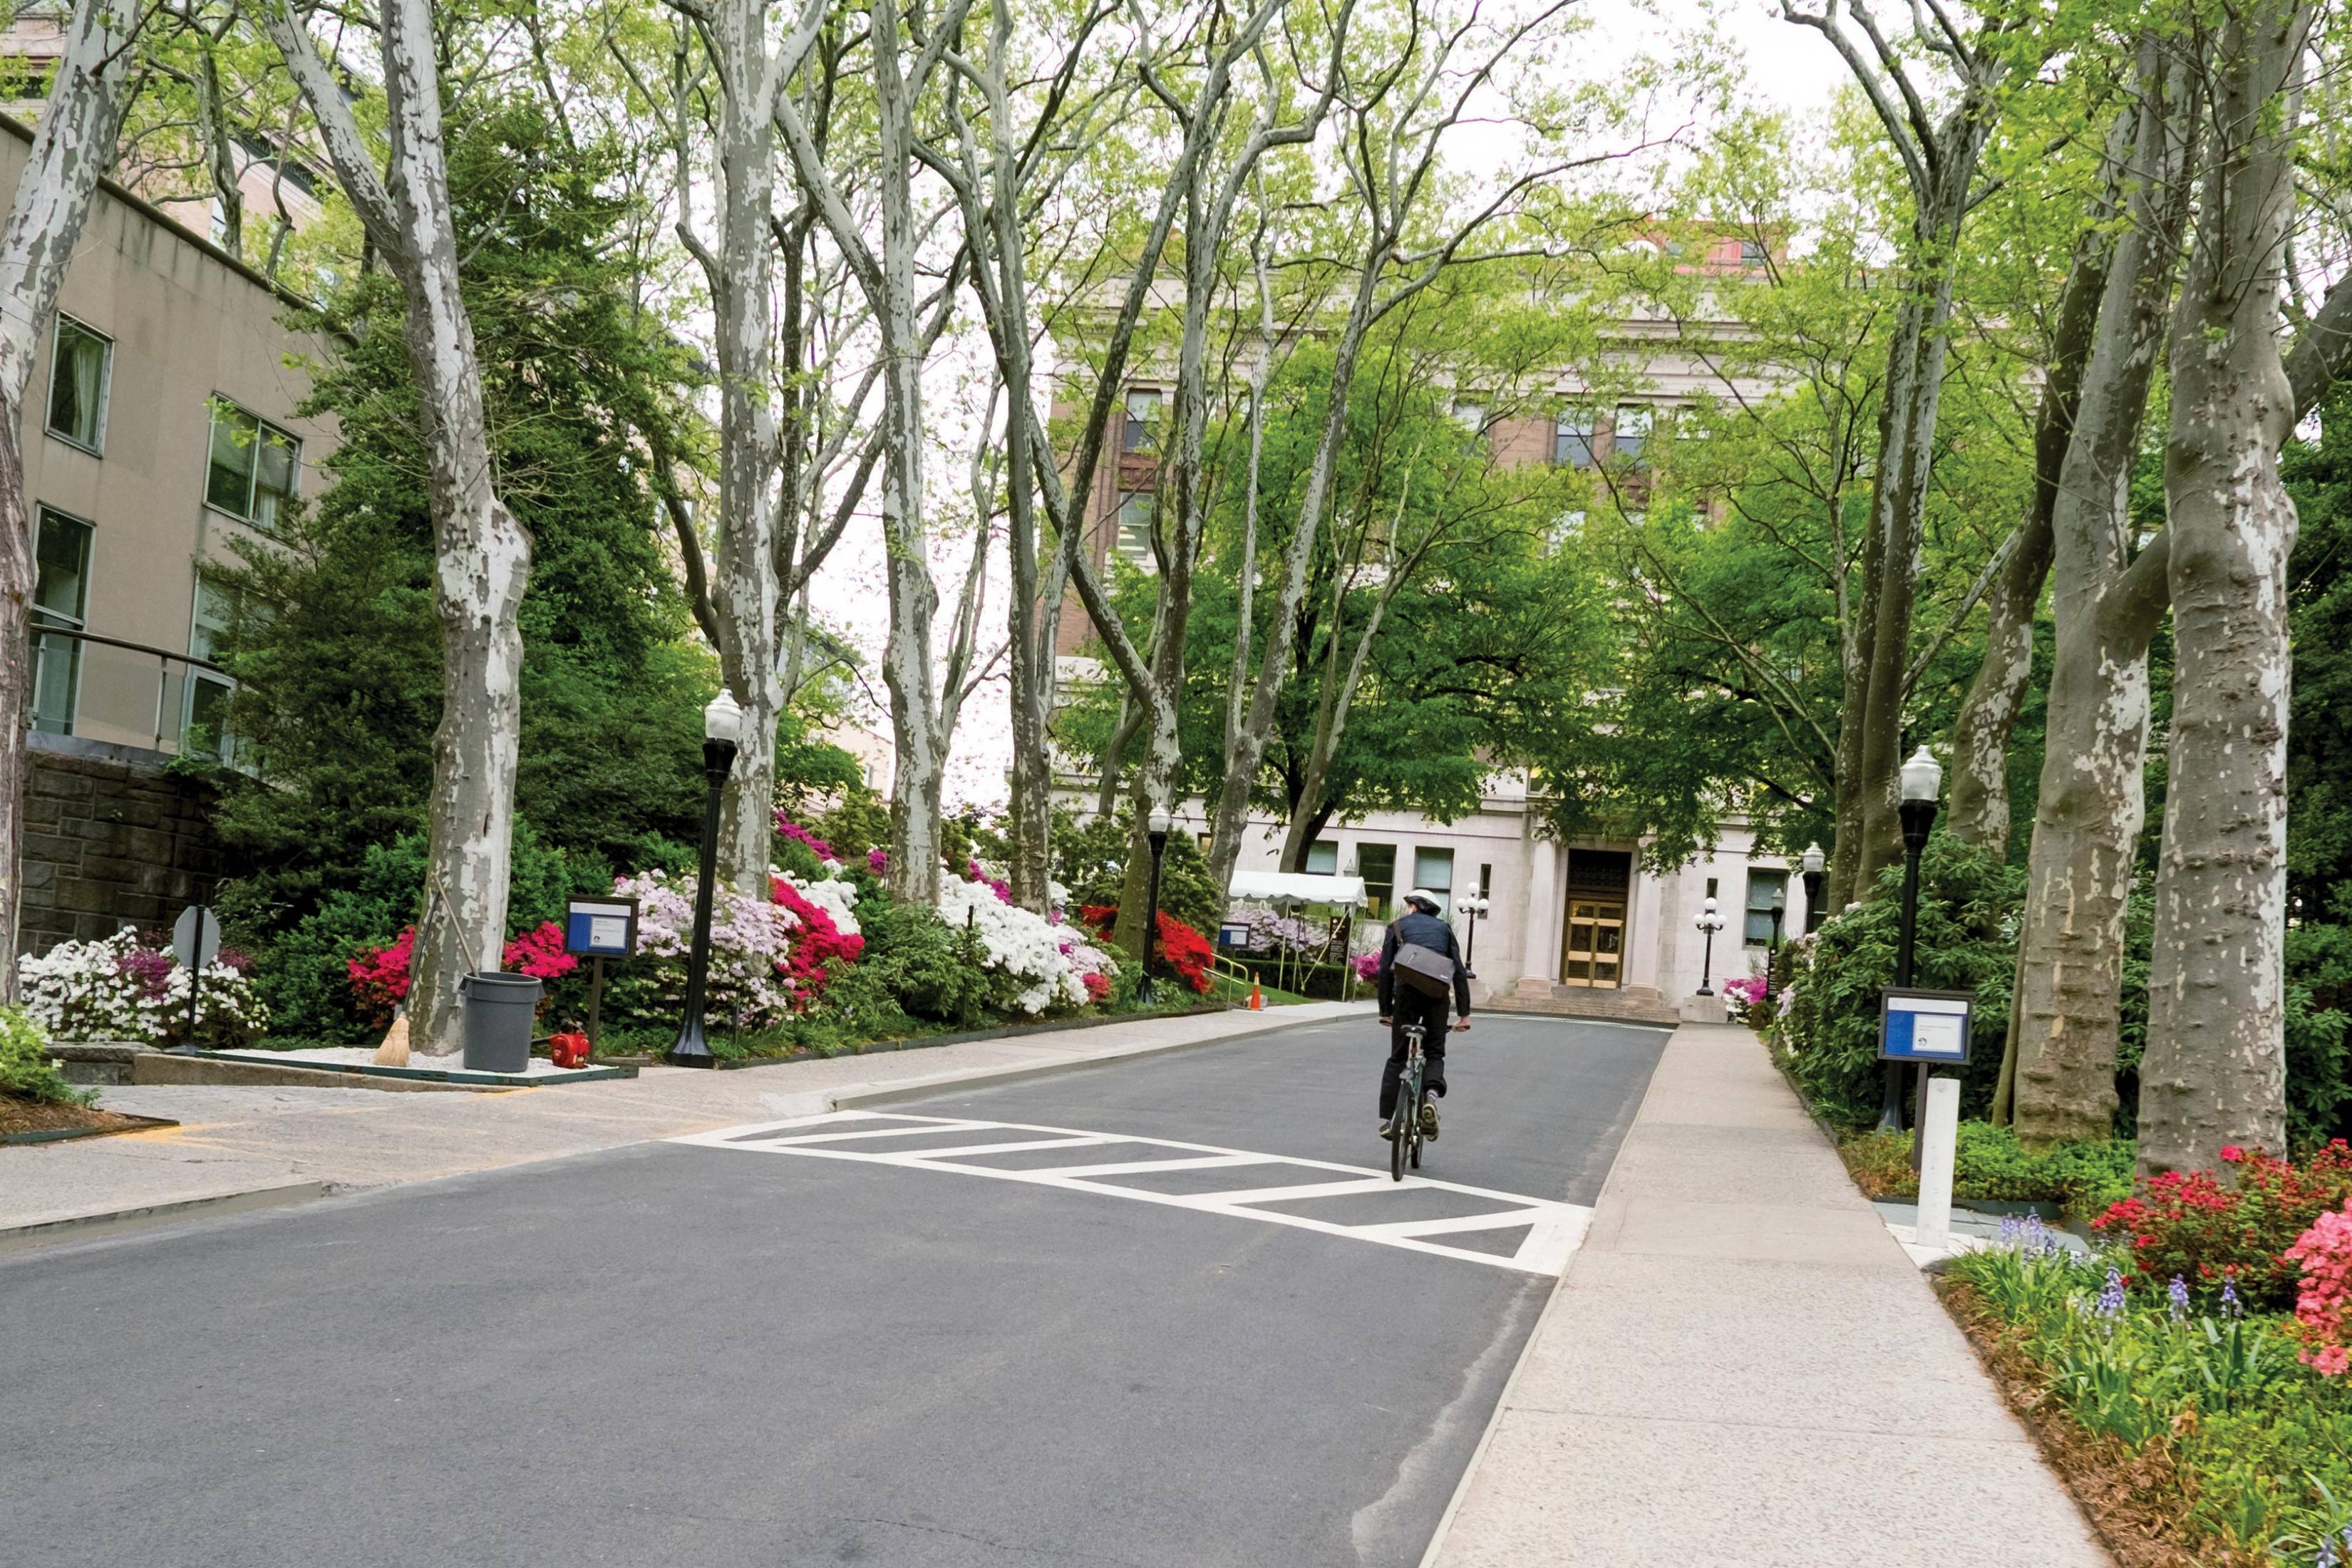 Biking on Rockefeller campus